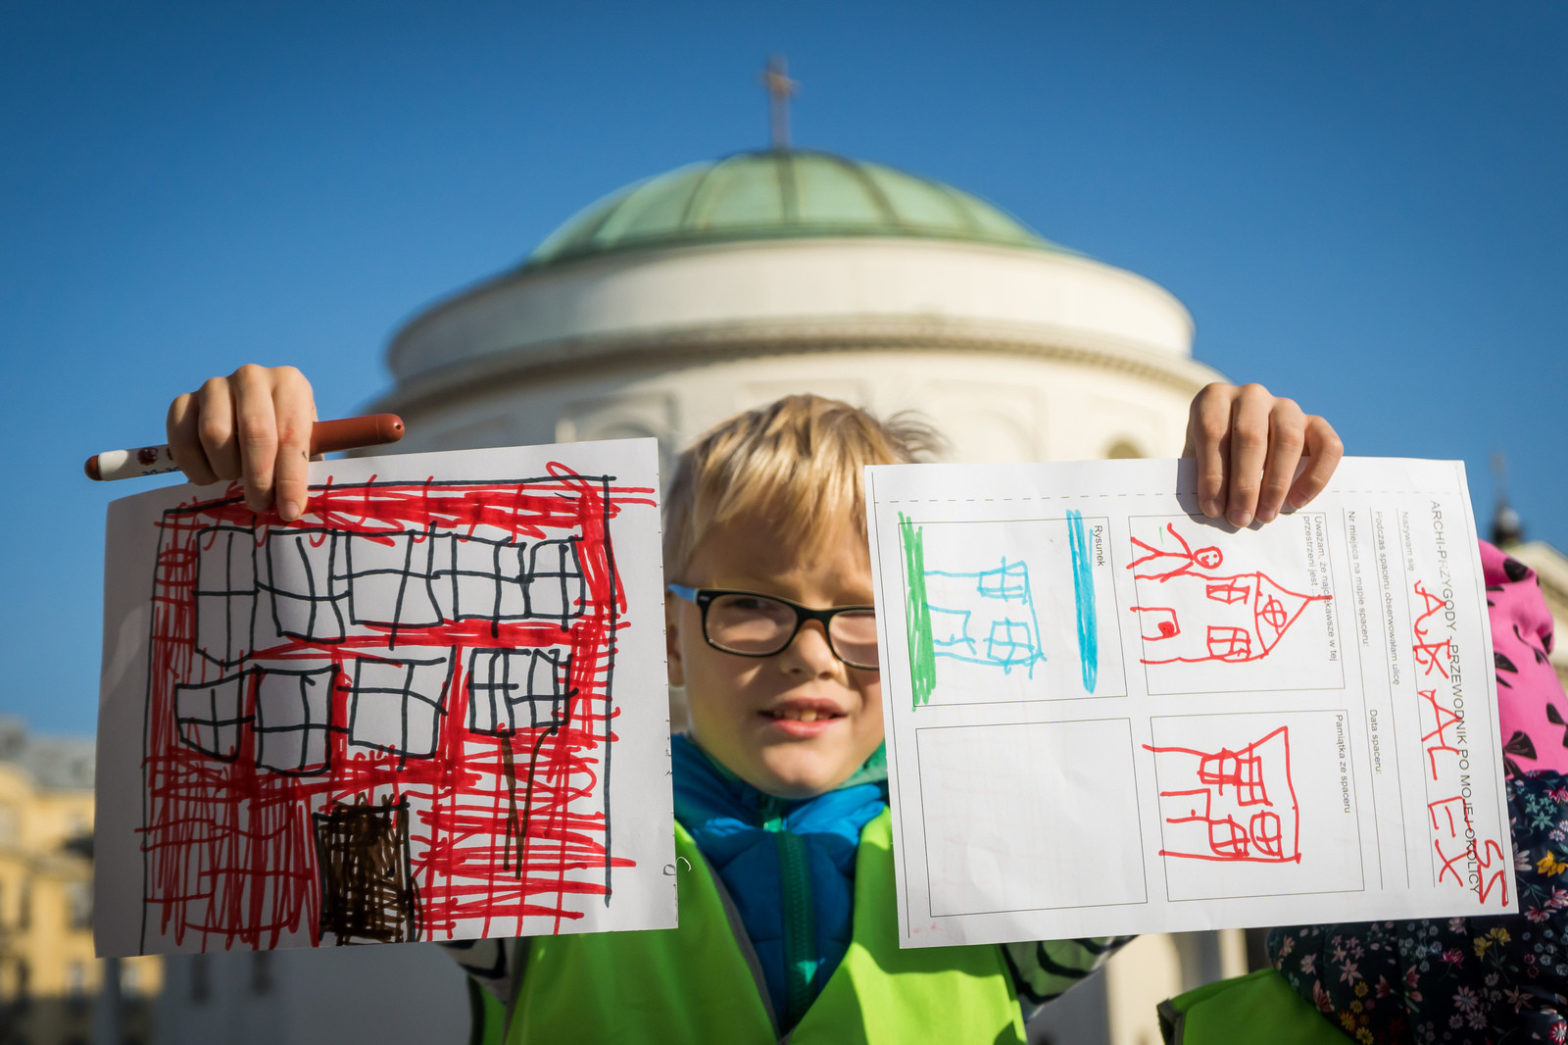 Dziecko pokazuje swoje kolorowe rysunki budynków.